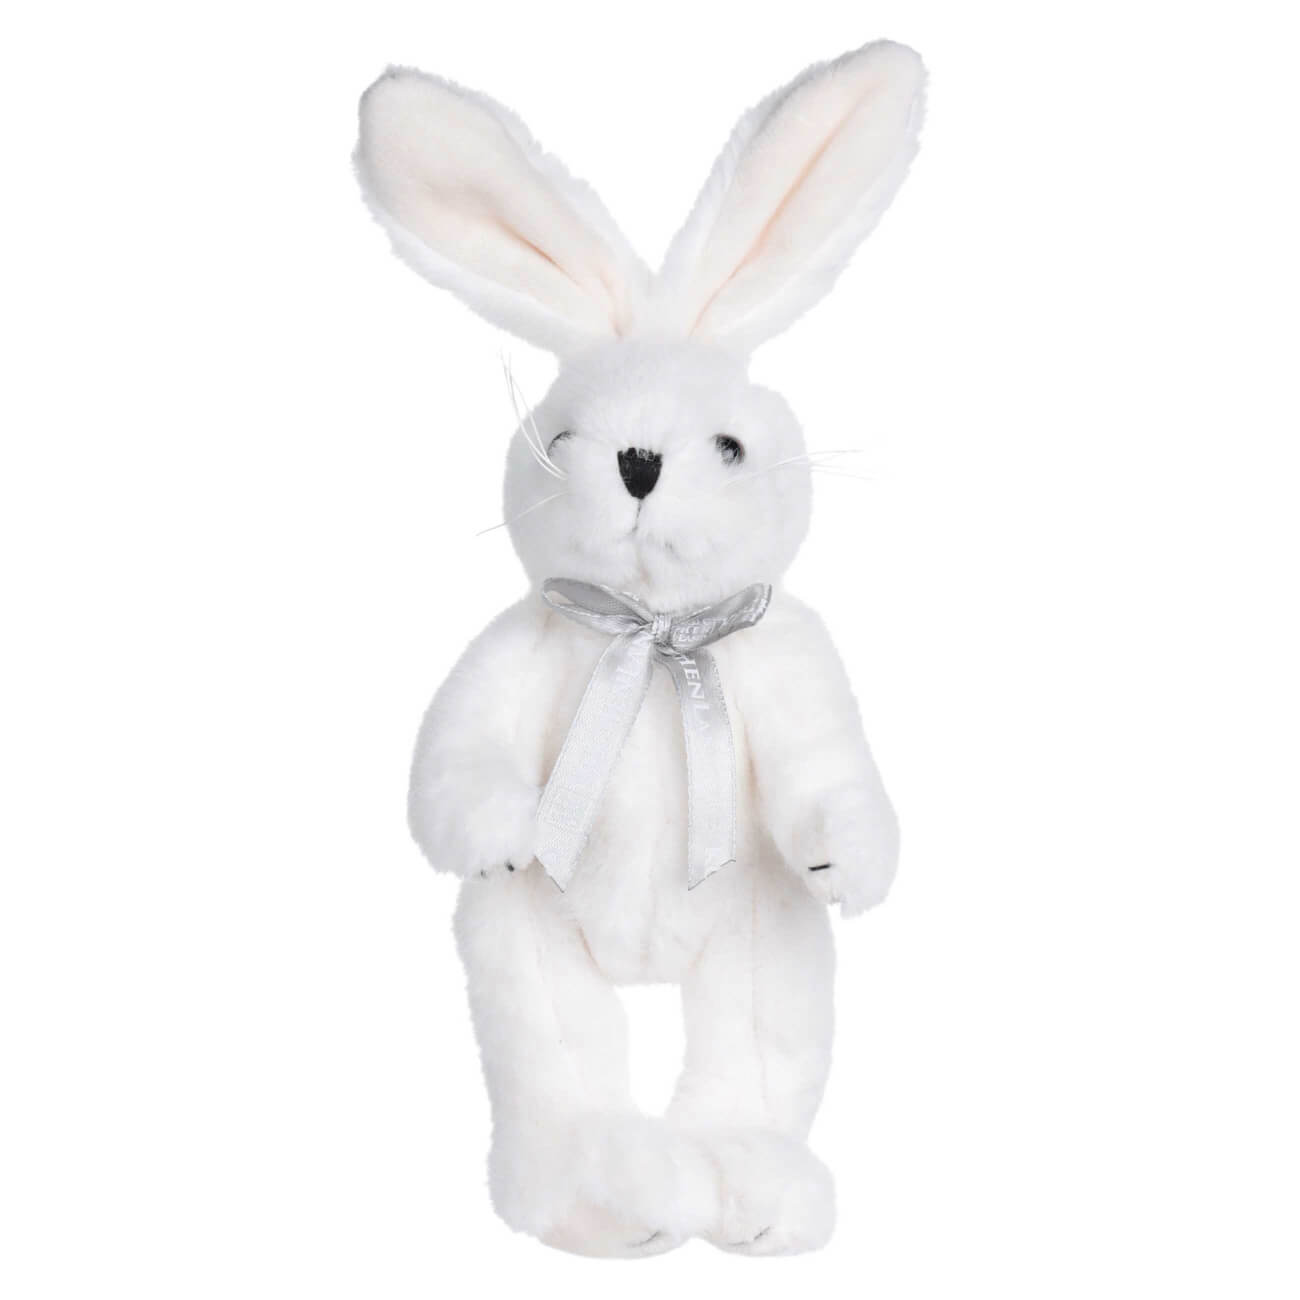 Игрушка, 20 см, мягкая, с подвижными лапами, полиэстер, белая, Кролик, Rabbit toy мягкая игрушка лупоглазики северок